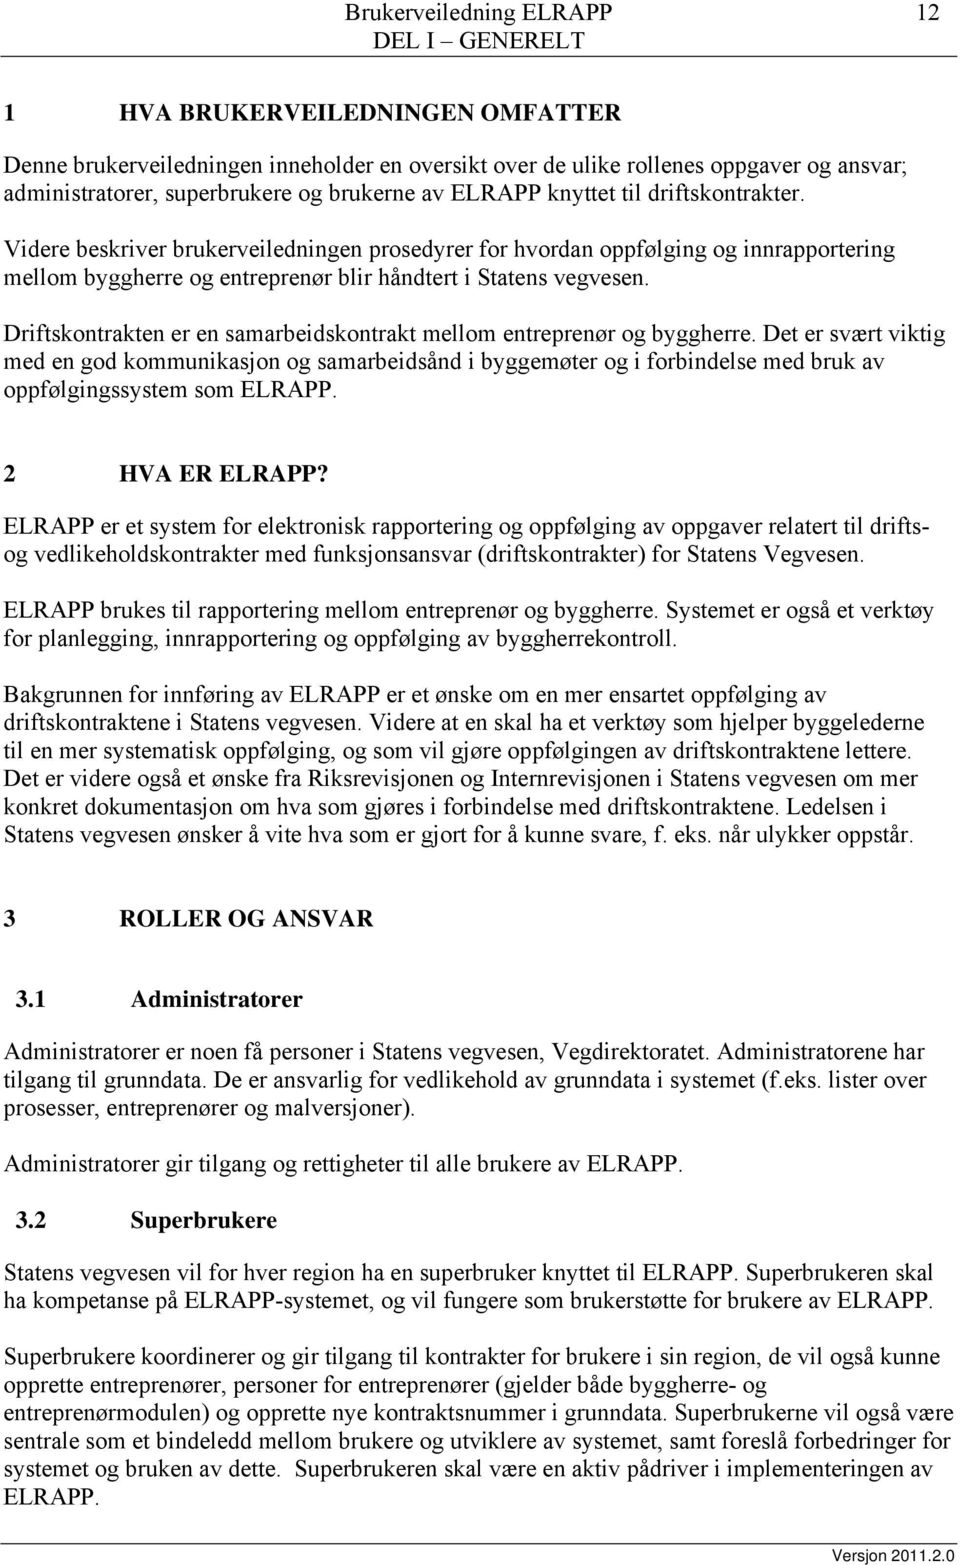 Videre beskriver brukerveiledningen prosedyrer for hvordan oppfølging og innrapportering mellom byggherre og entreprenør blir håndtert i Statens vegvesen.